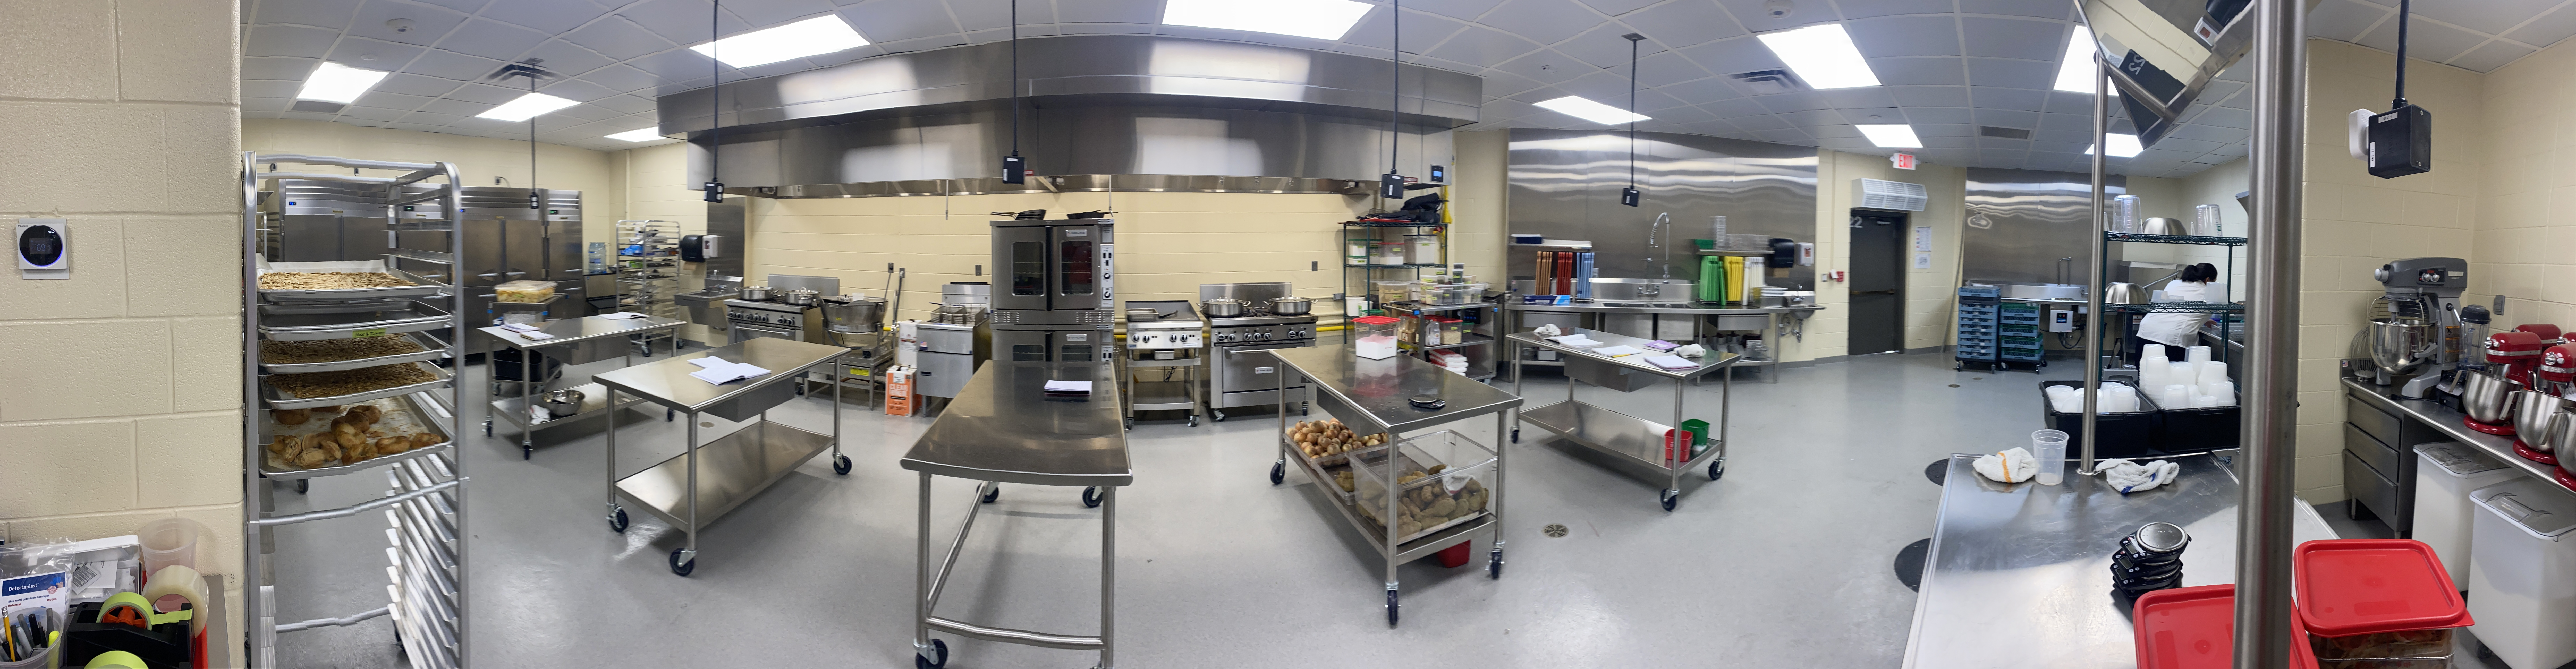 Panoramic Photo of Kitchen